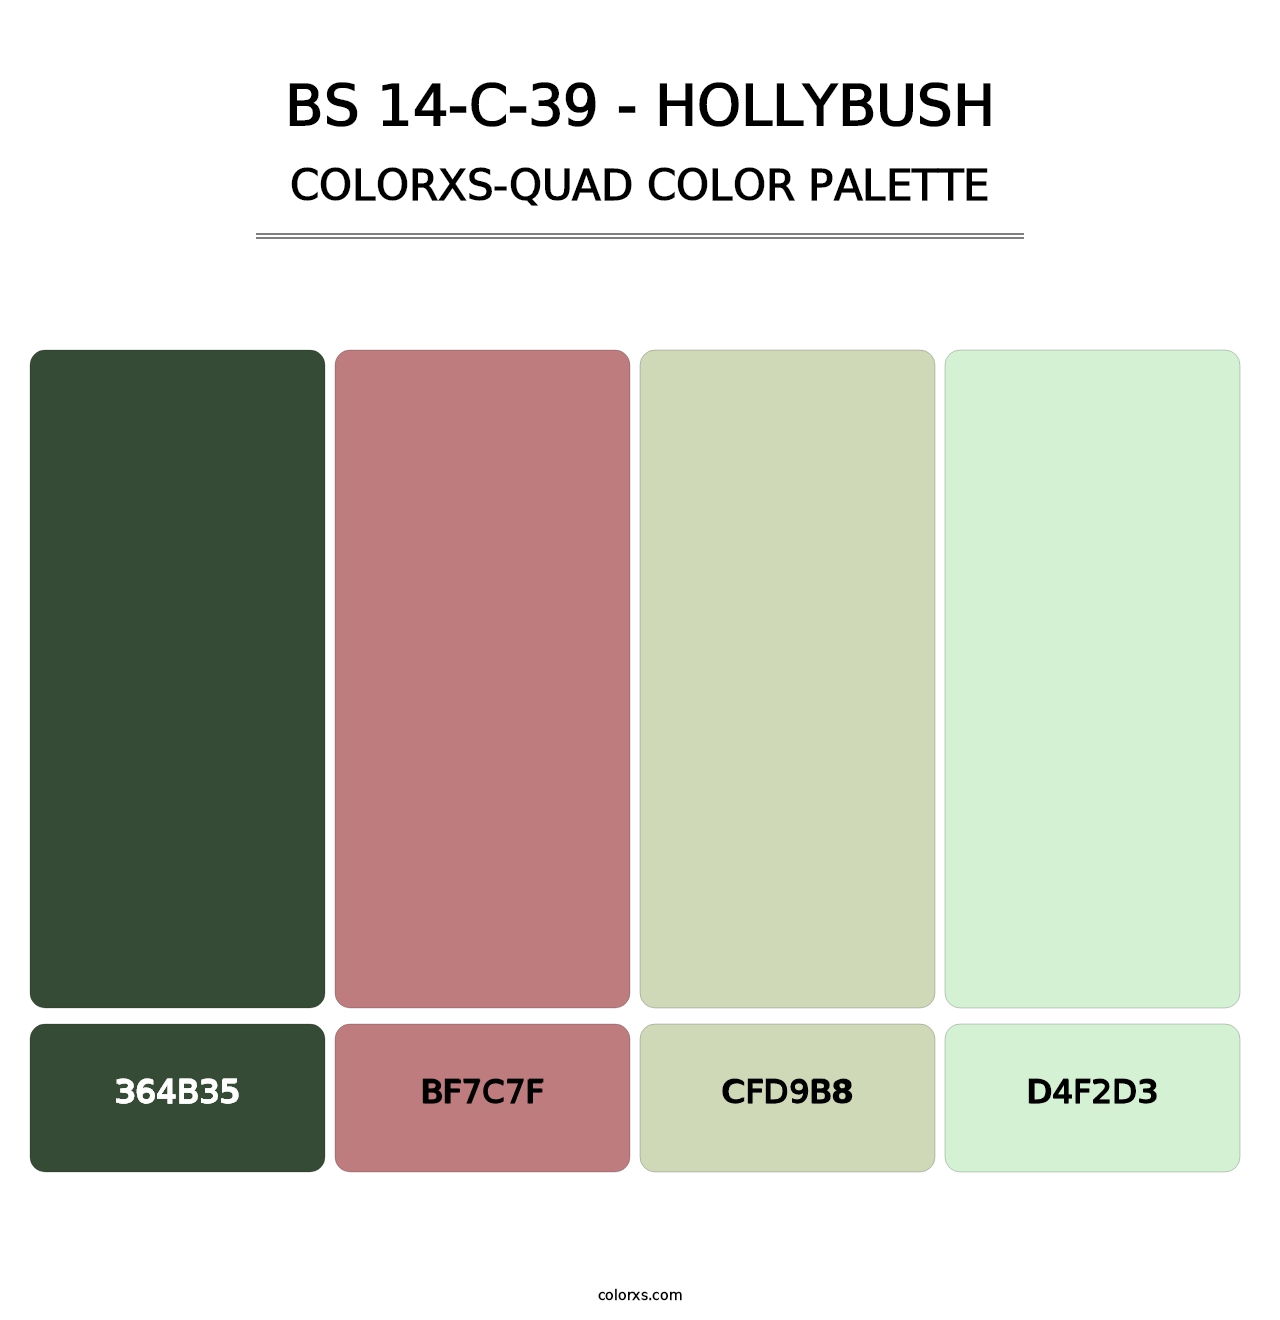 BS 14-C-39 - Hollybush - Colorxs Quad Palette